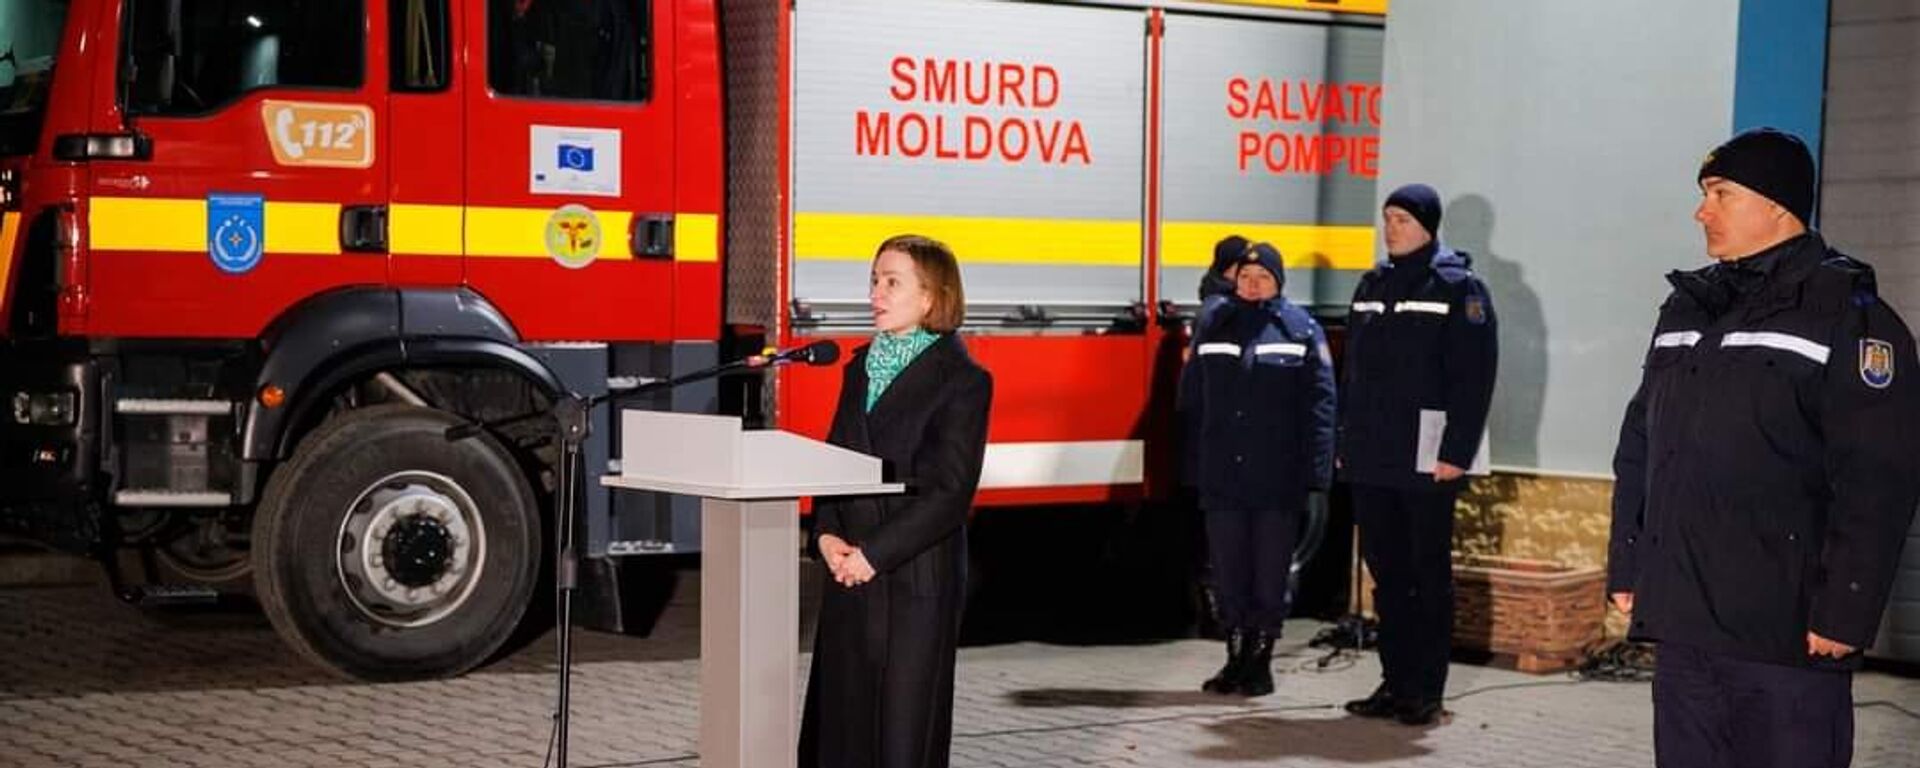 Отряд спасателей из Молдовы направился в Турцию 06.02.2023 - Sputnik Молдова, 1920, 07.02.2023